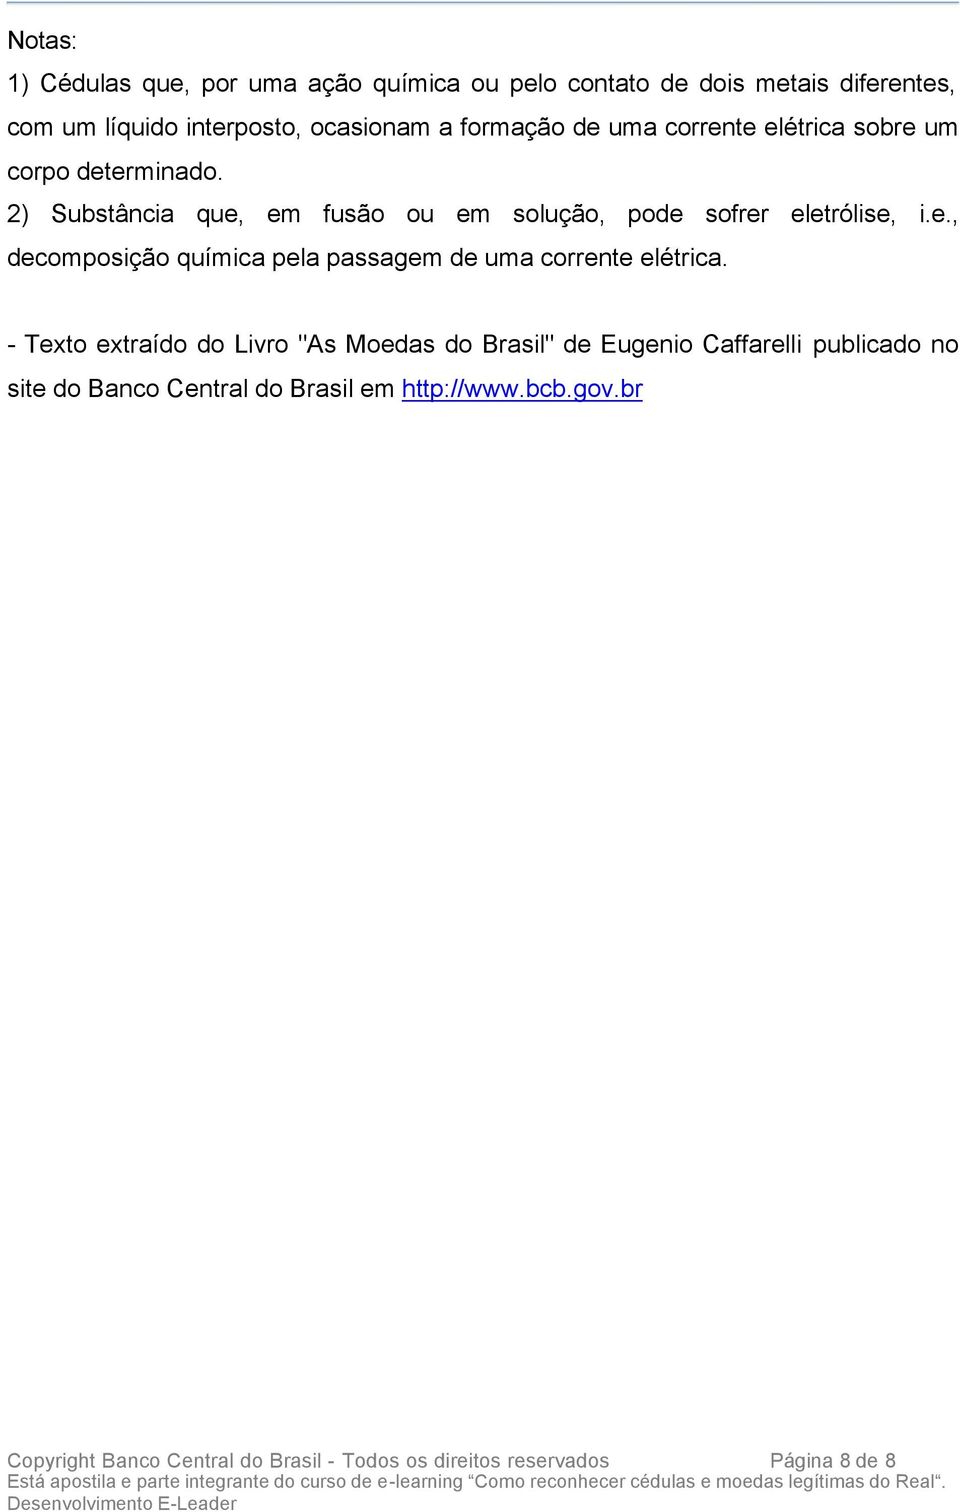 - Texto extraído do Livro "As Moedas do Brasil" de Eugenio Caffarelli publicado no site do Banco Central do Brasil em http://www.bcb.